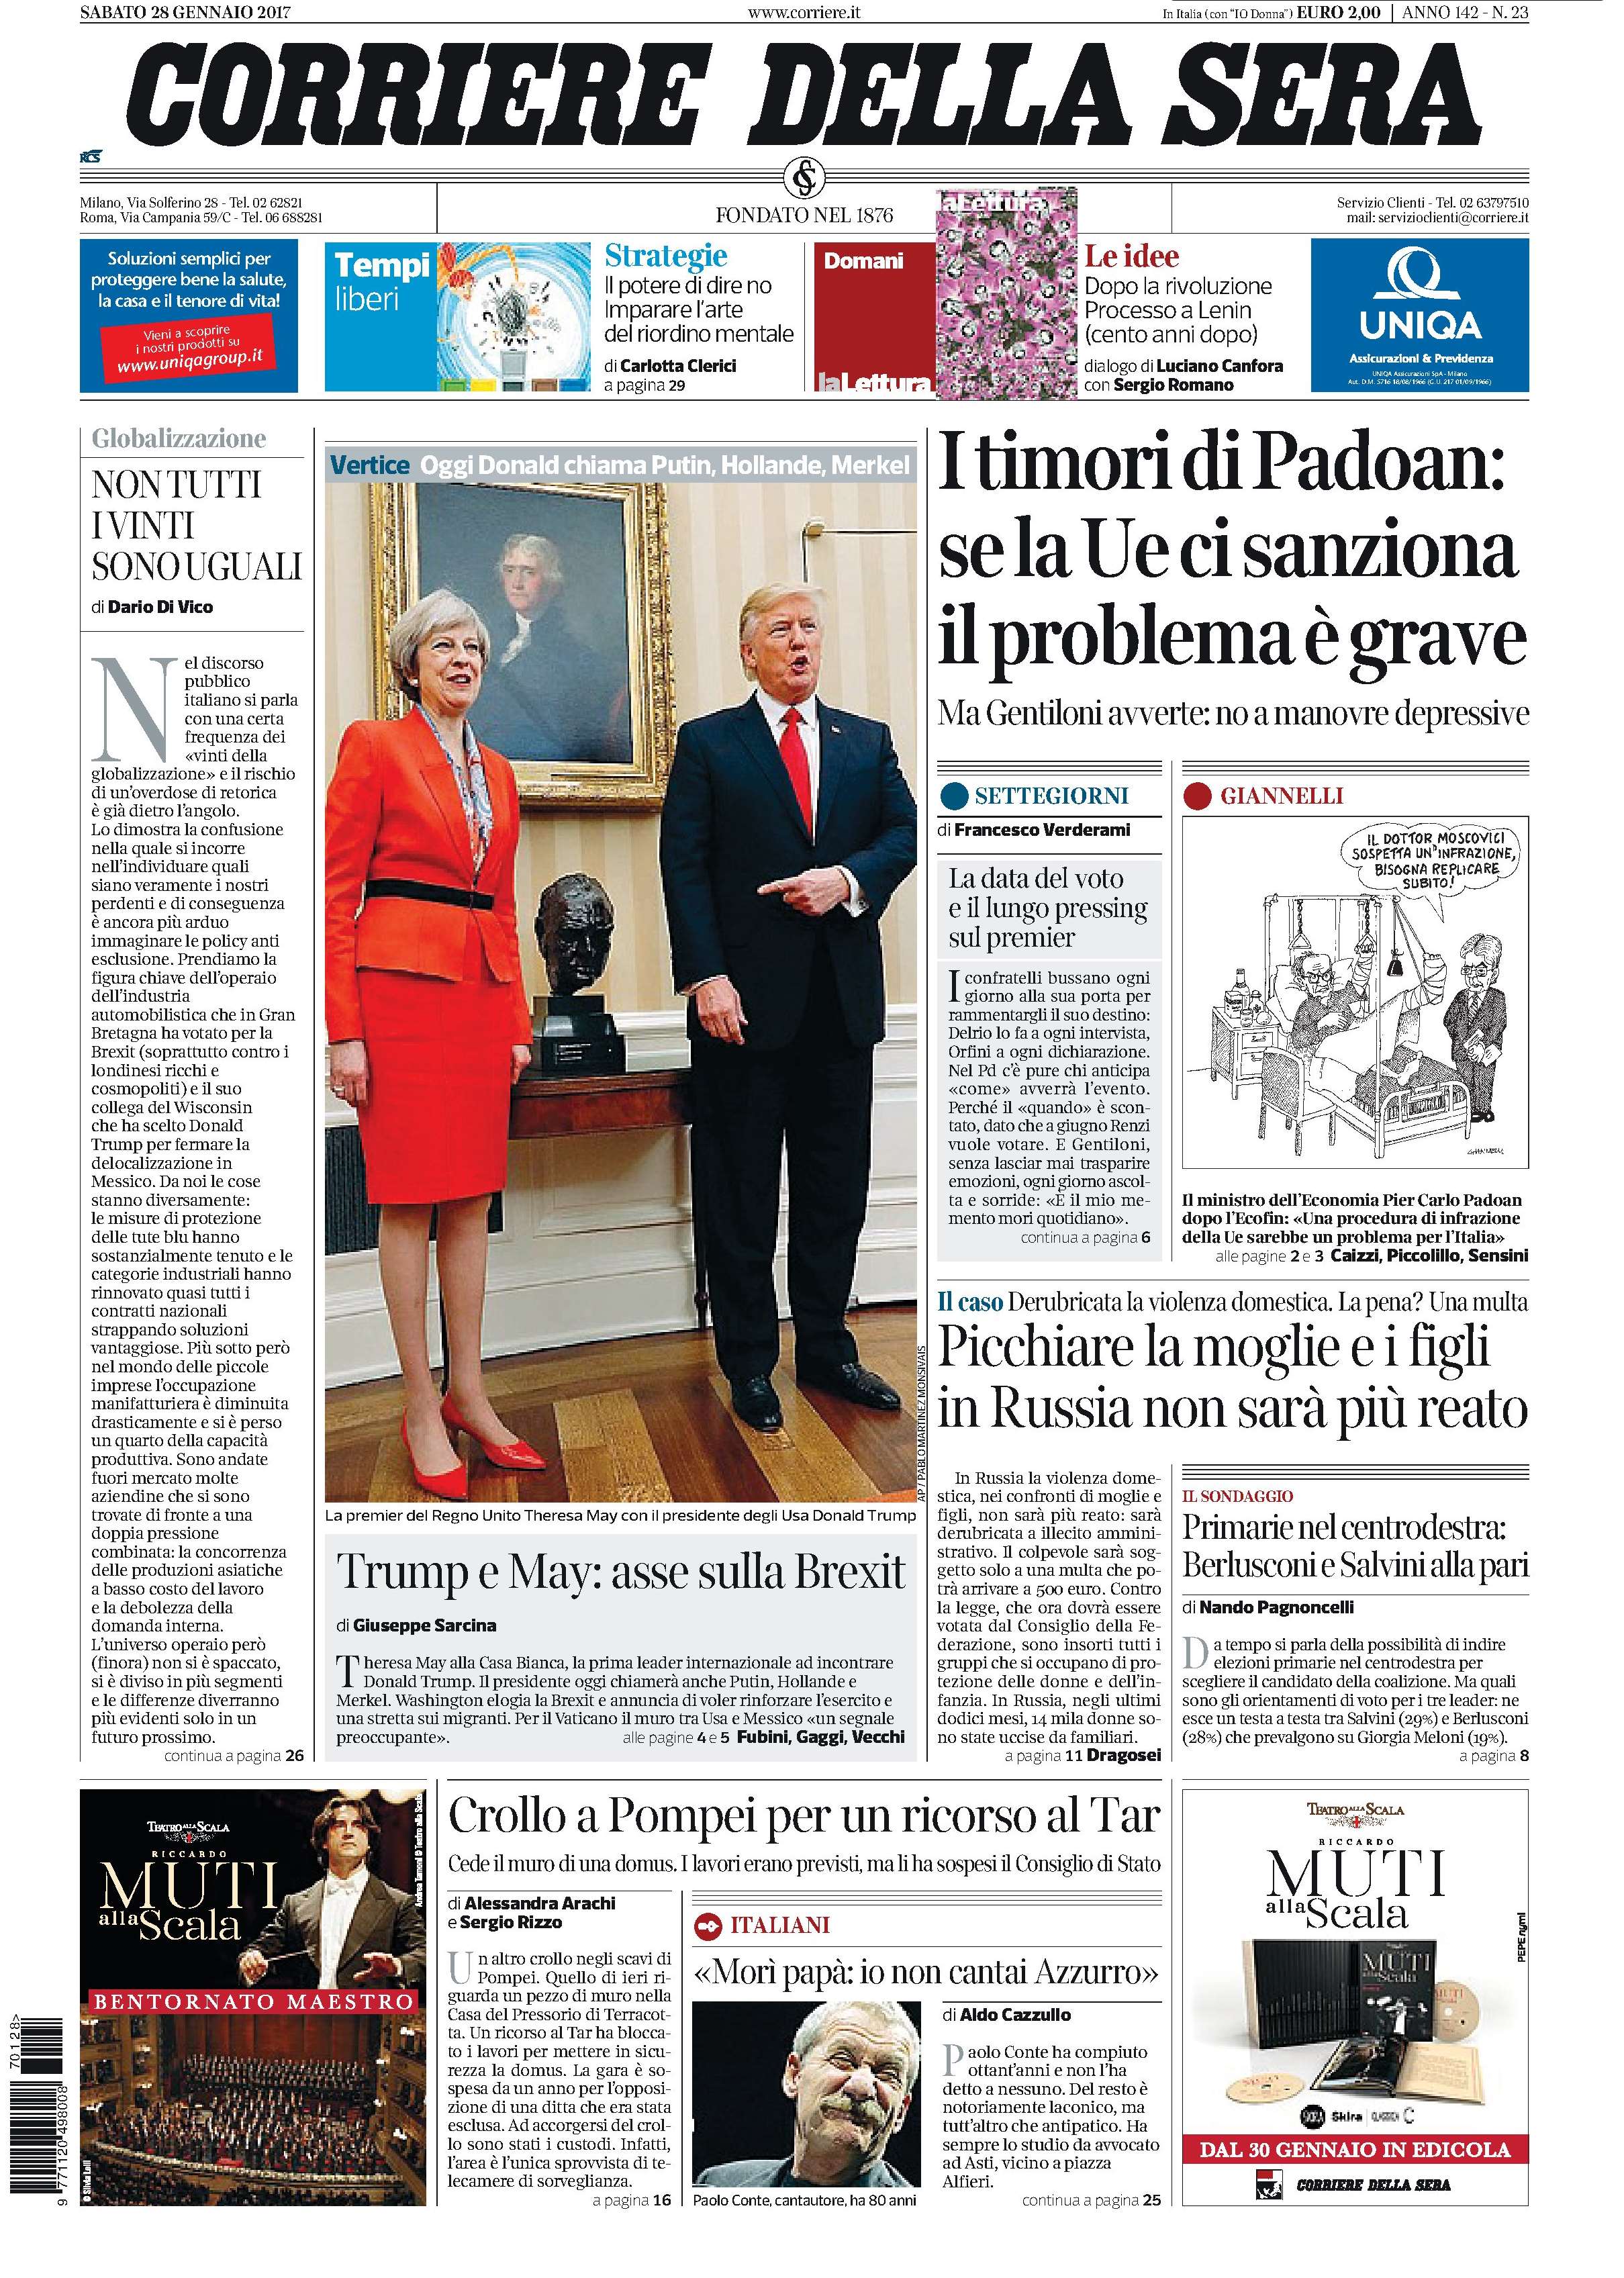 Corriere della Sera ITA 2017-1-28 Cover